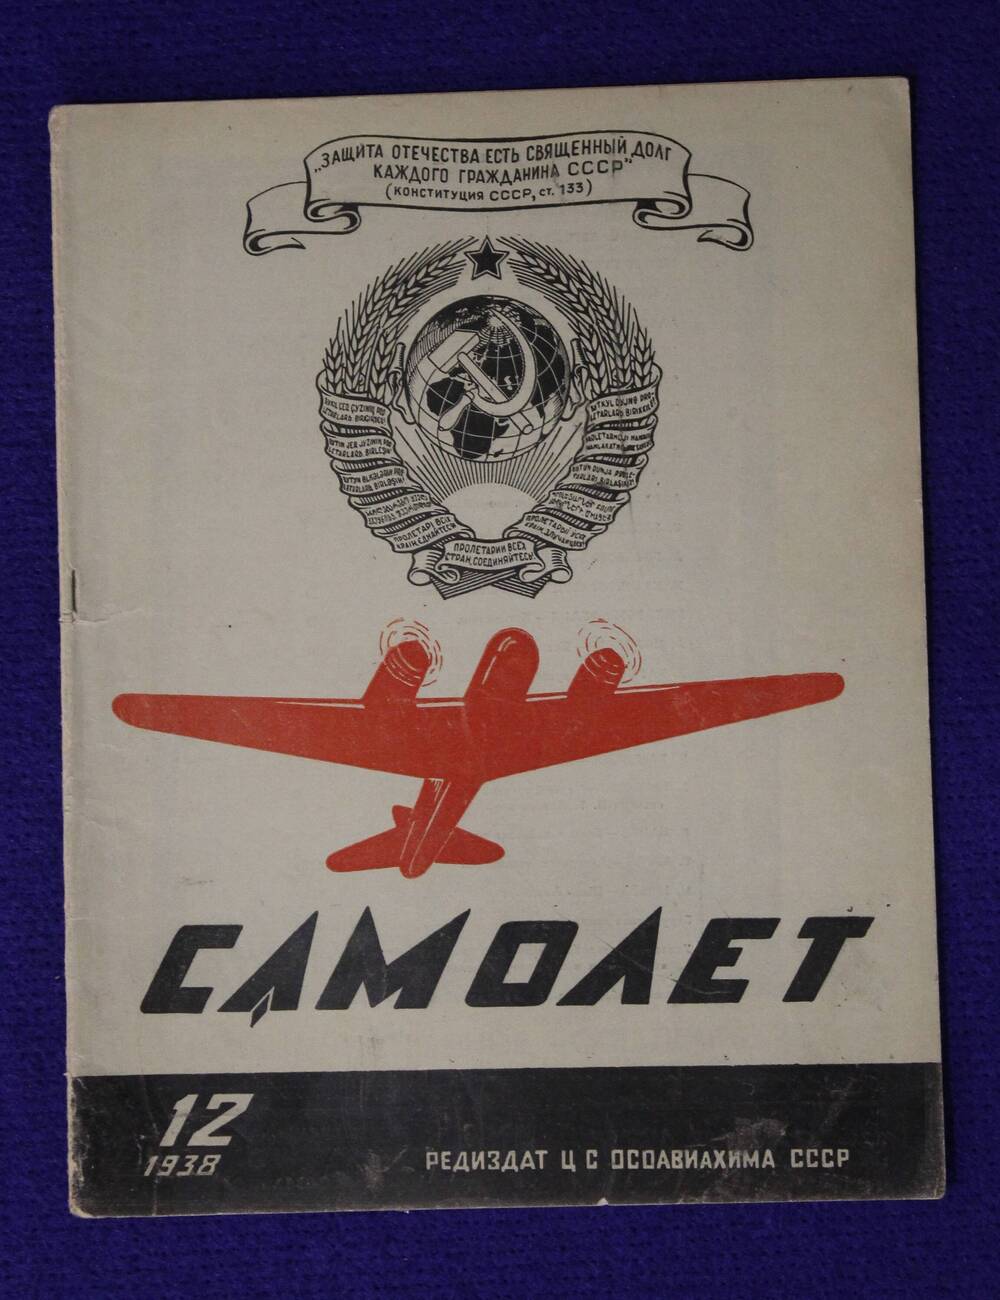 Журнал Самолет № 12 за 1938 г.